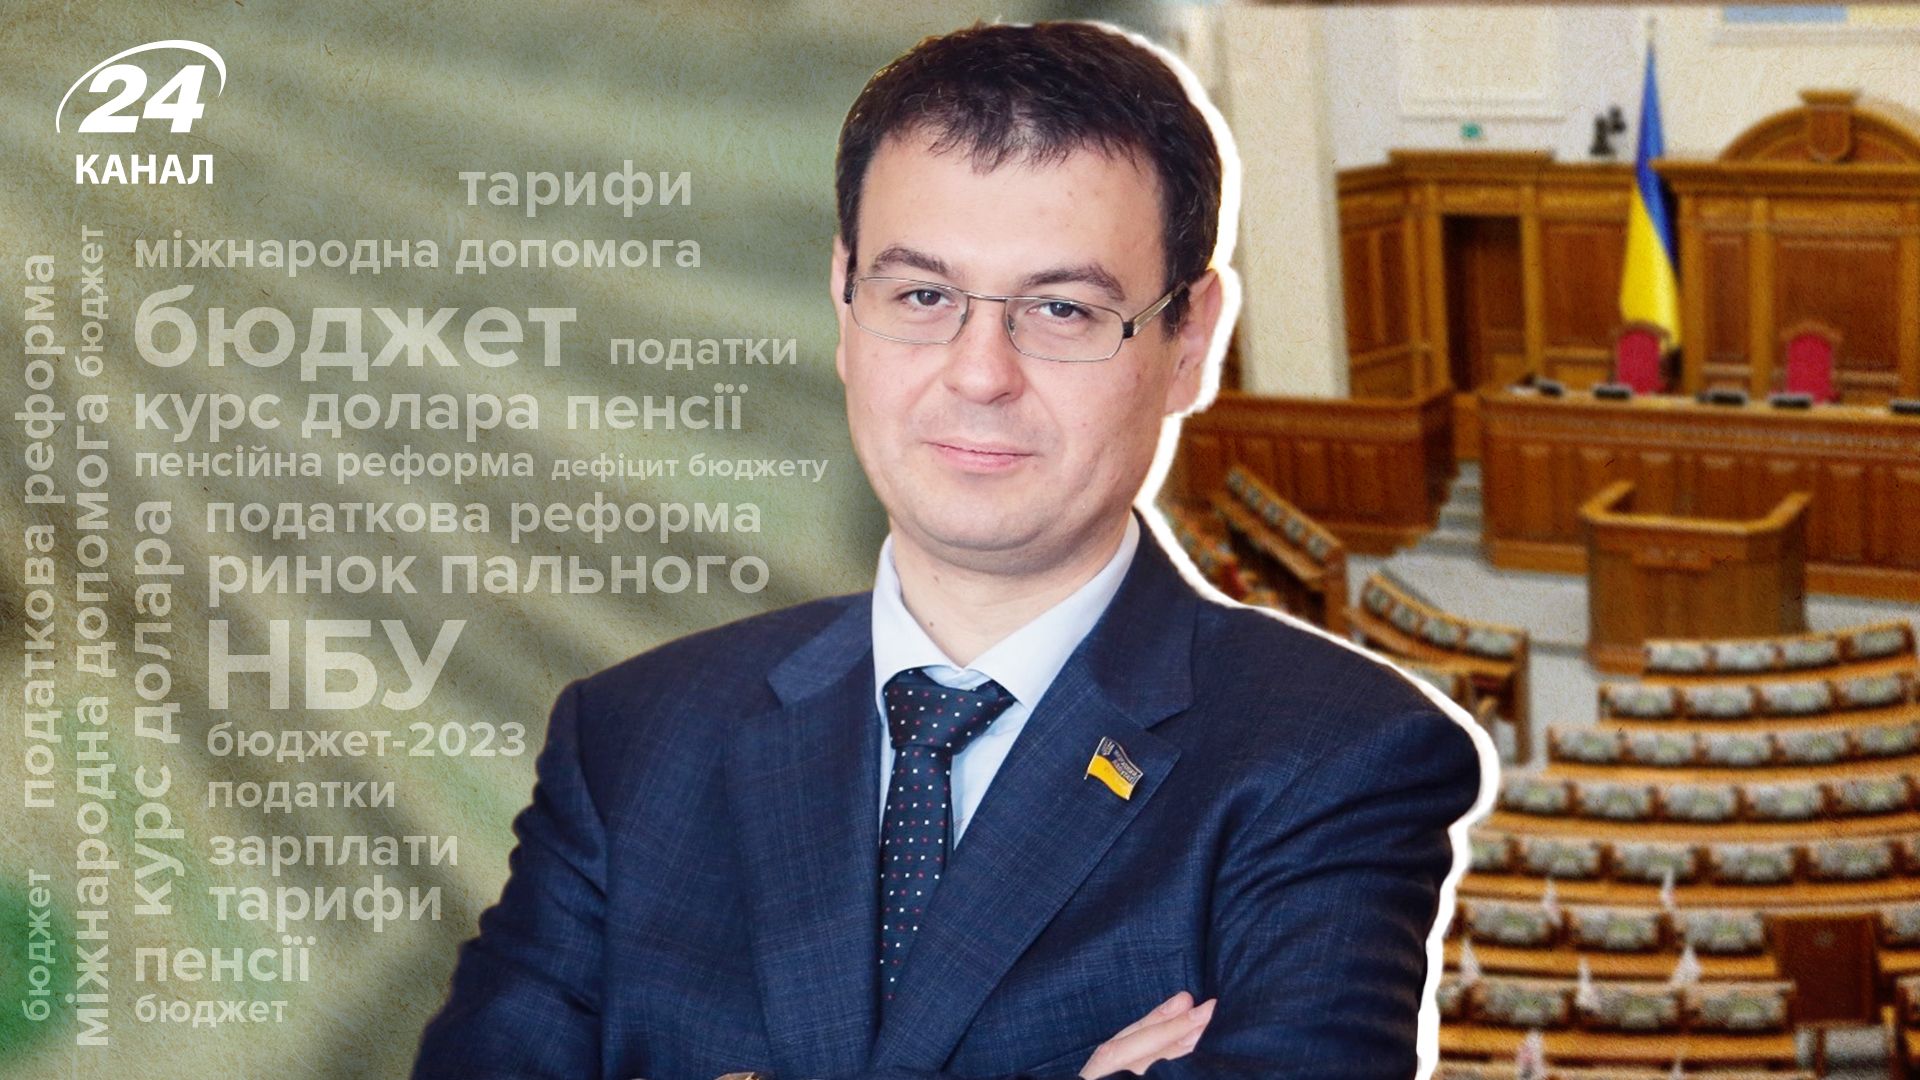 Бюджет-2023 и налоги в 2023 году - как будут жить украинцы - интервью с Гетманцевым